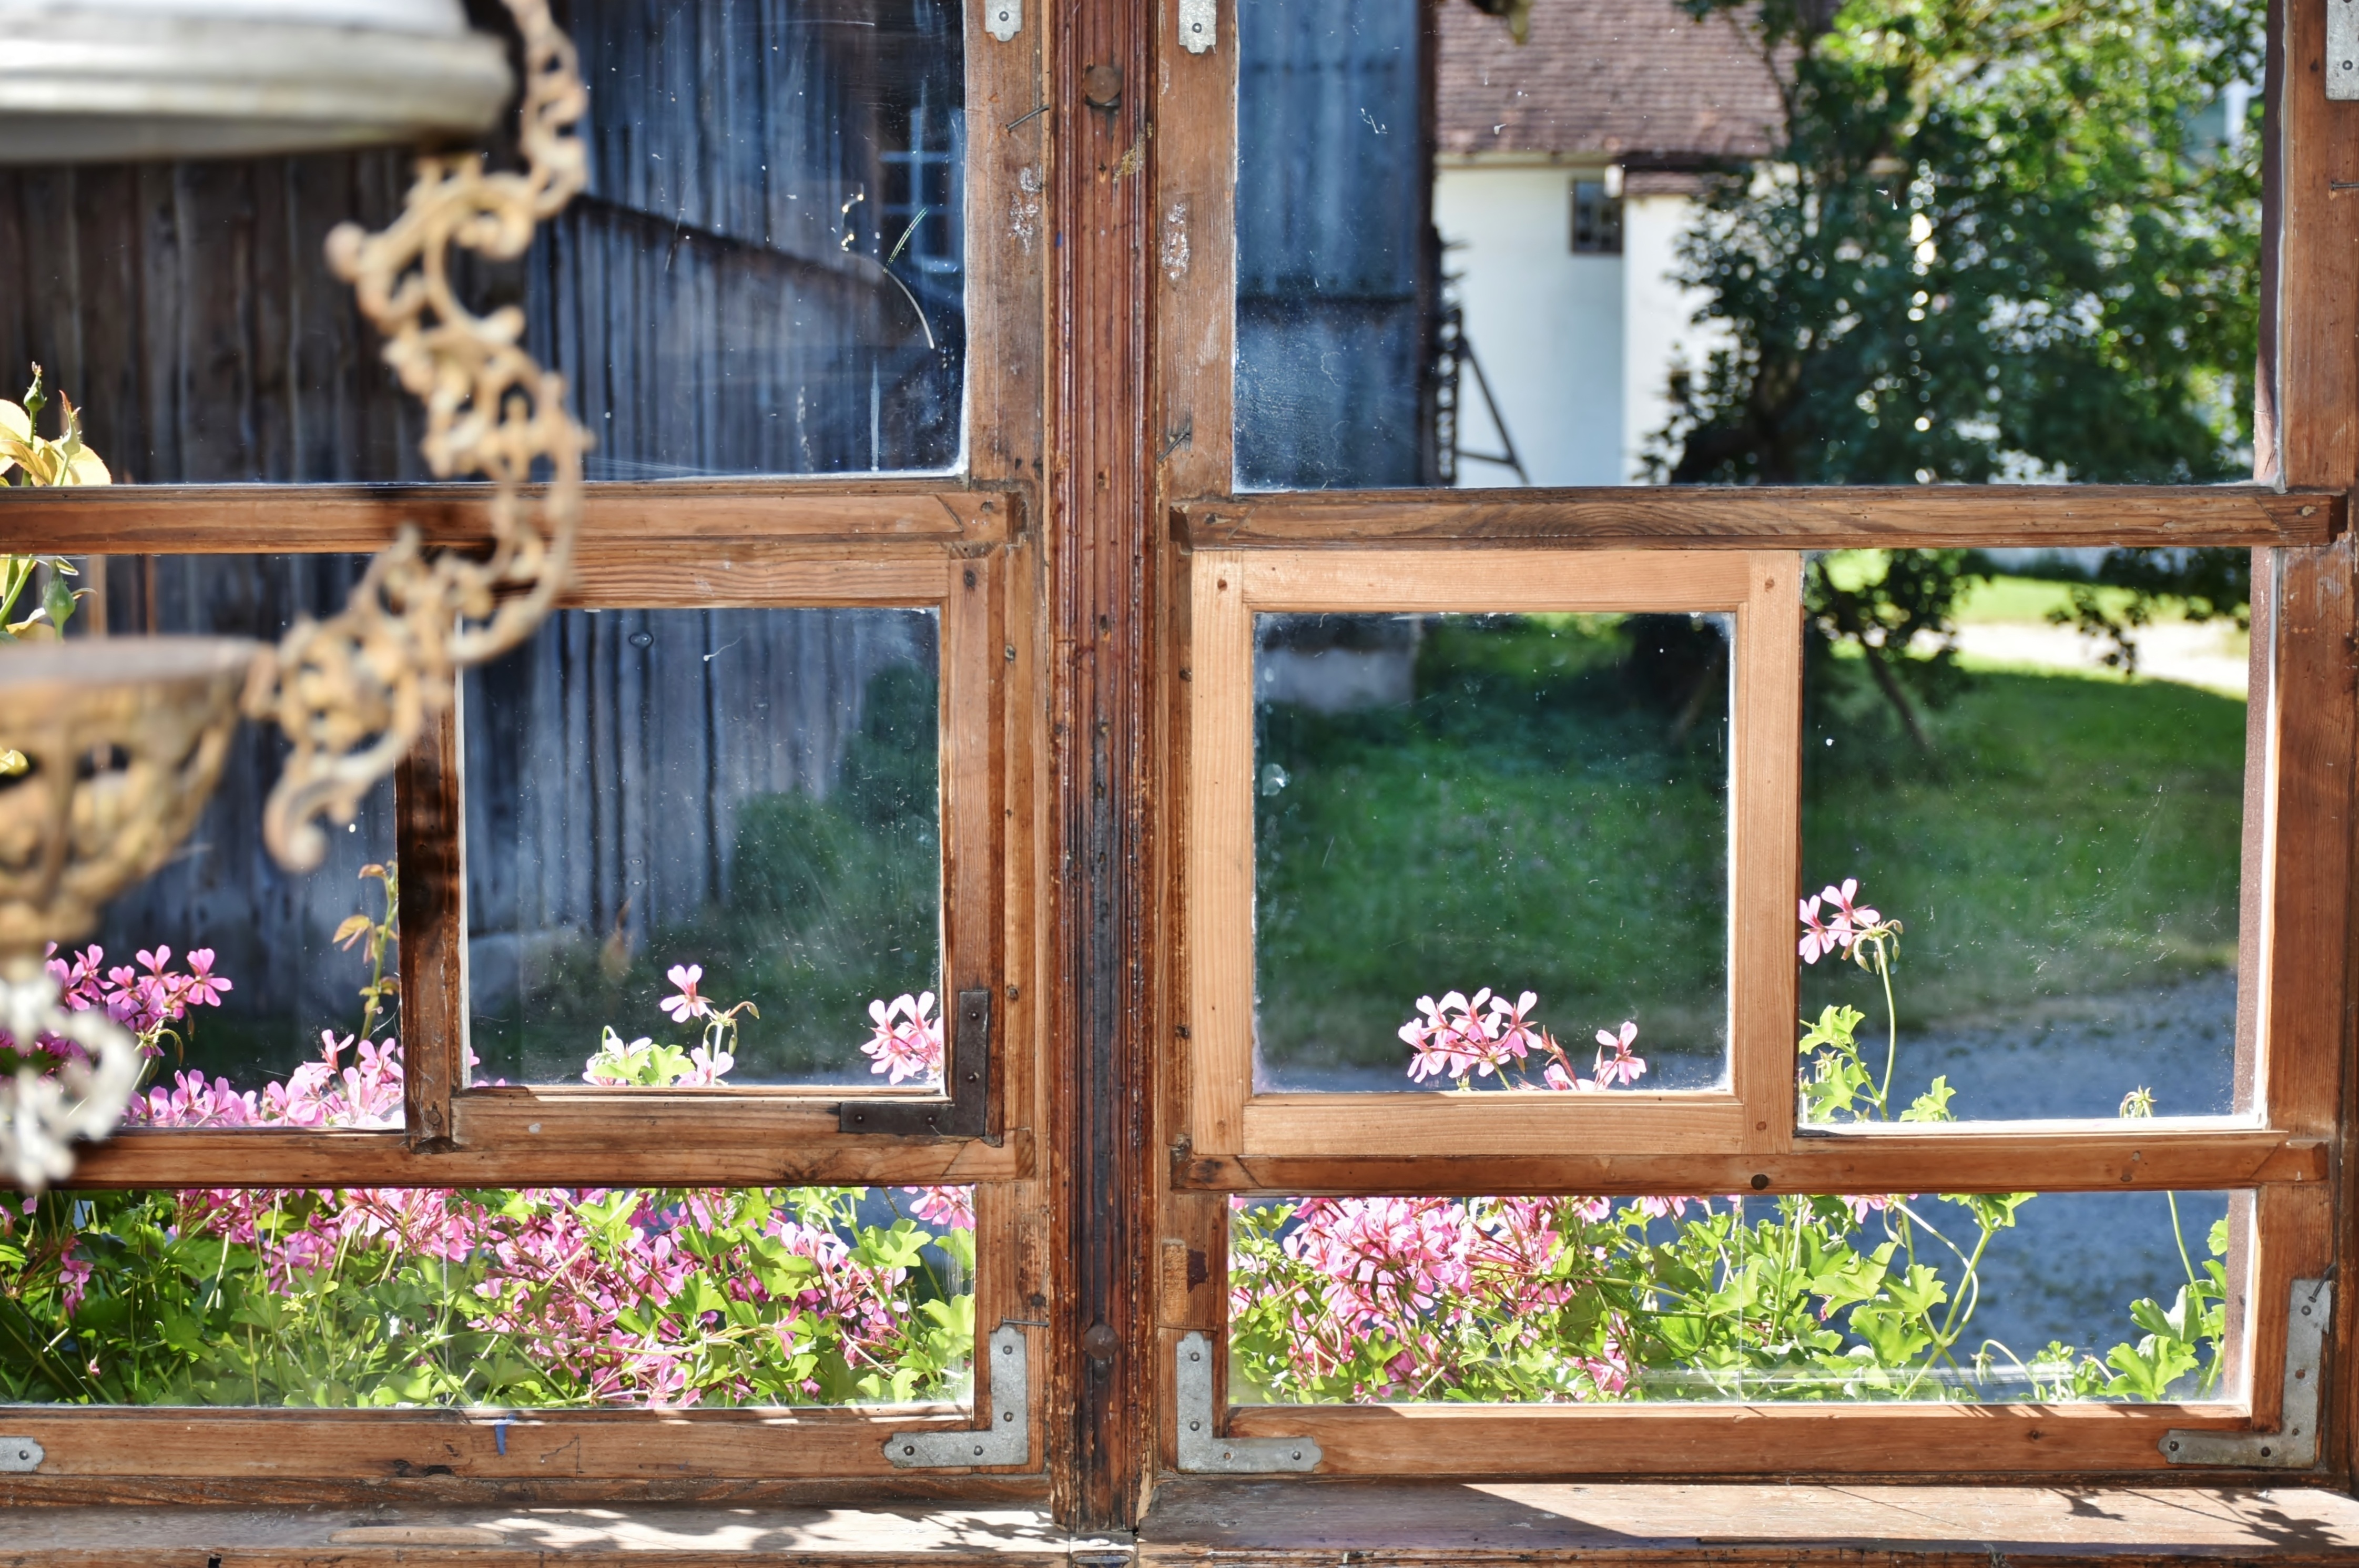 Летняя наша жизнь в старом доме. Деревенское окно. Вид из деревенского окна. Окно в деревенском доме. Деревянное окно в деревне.